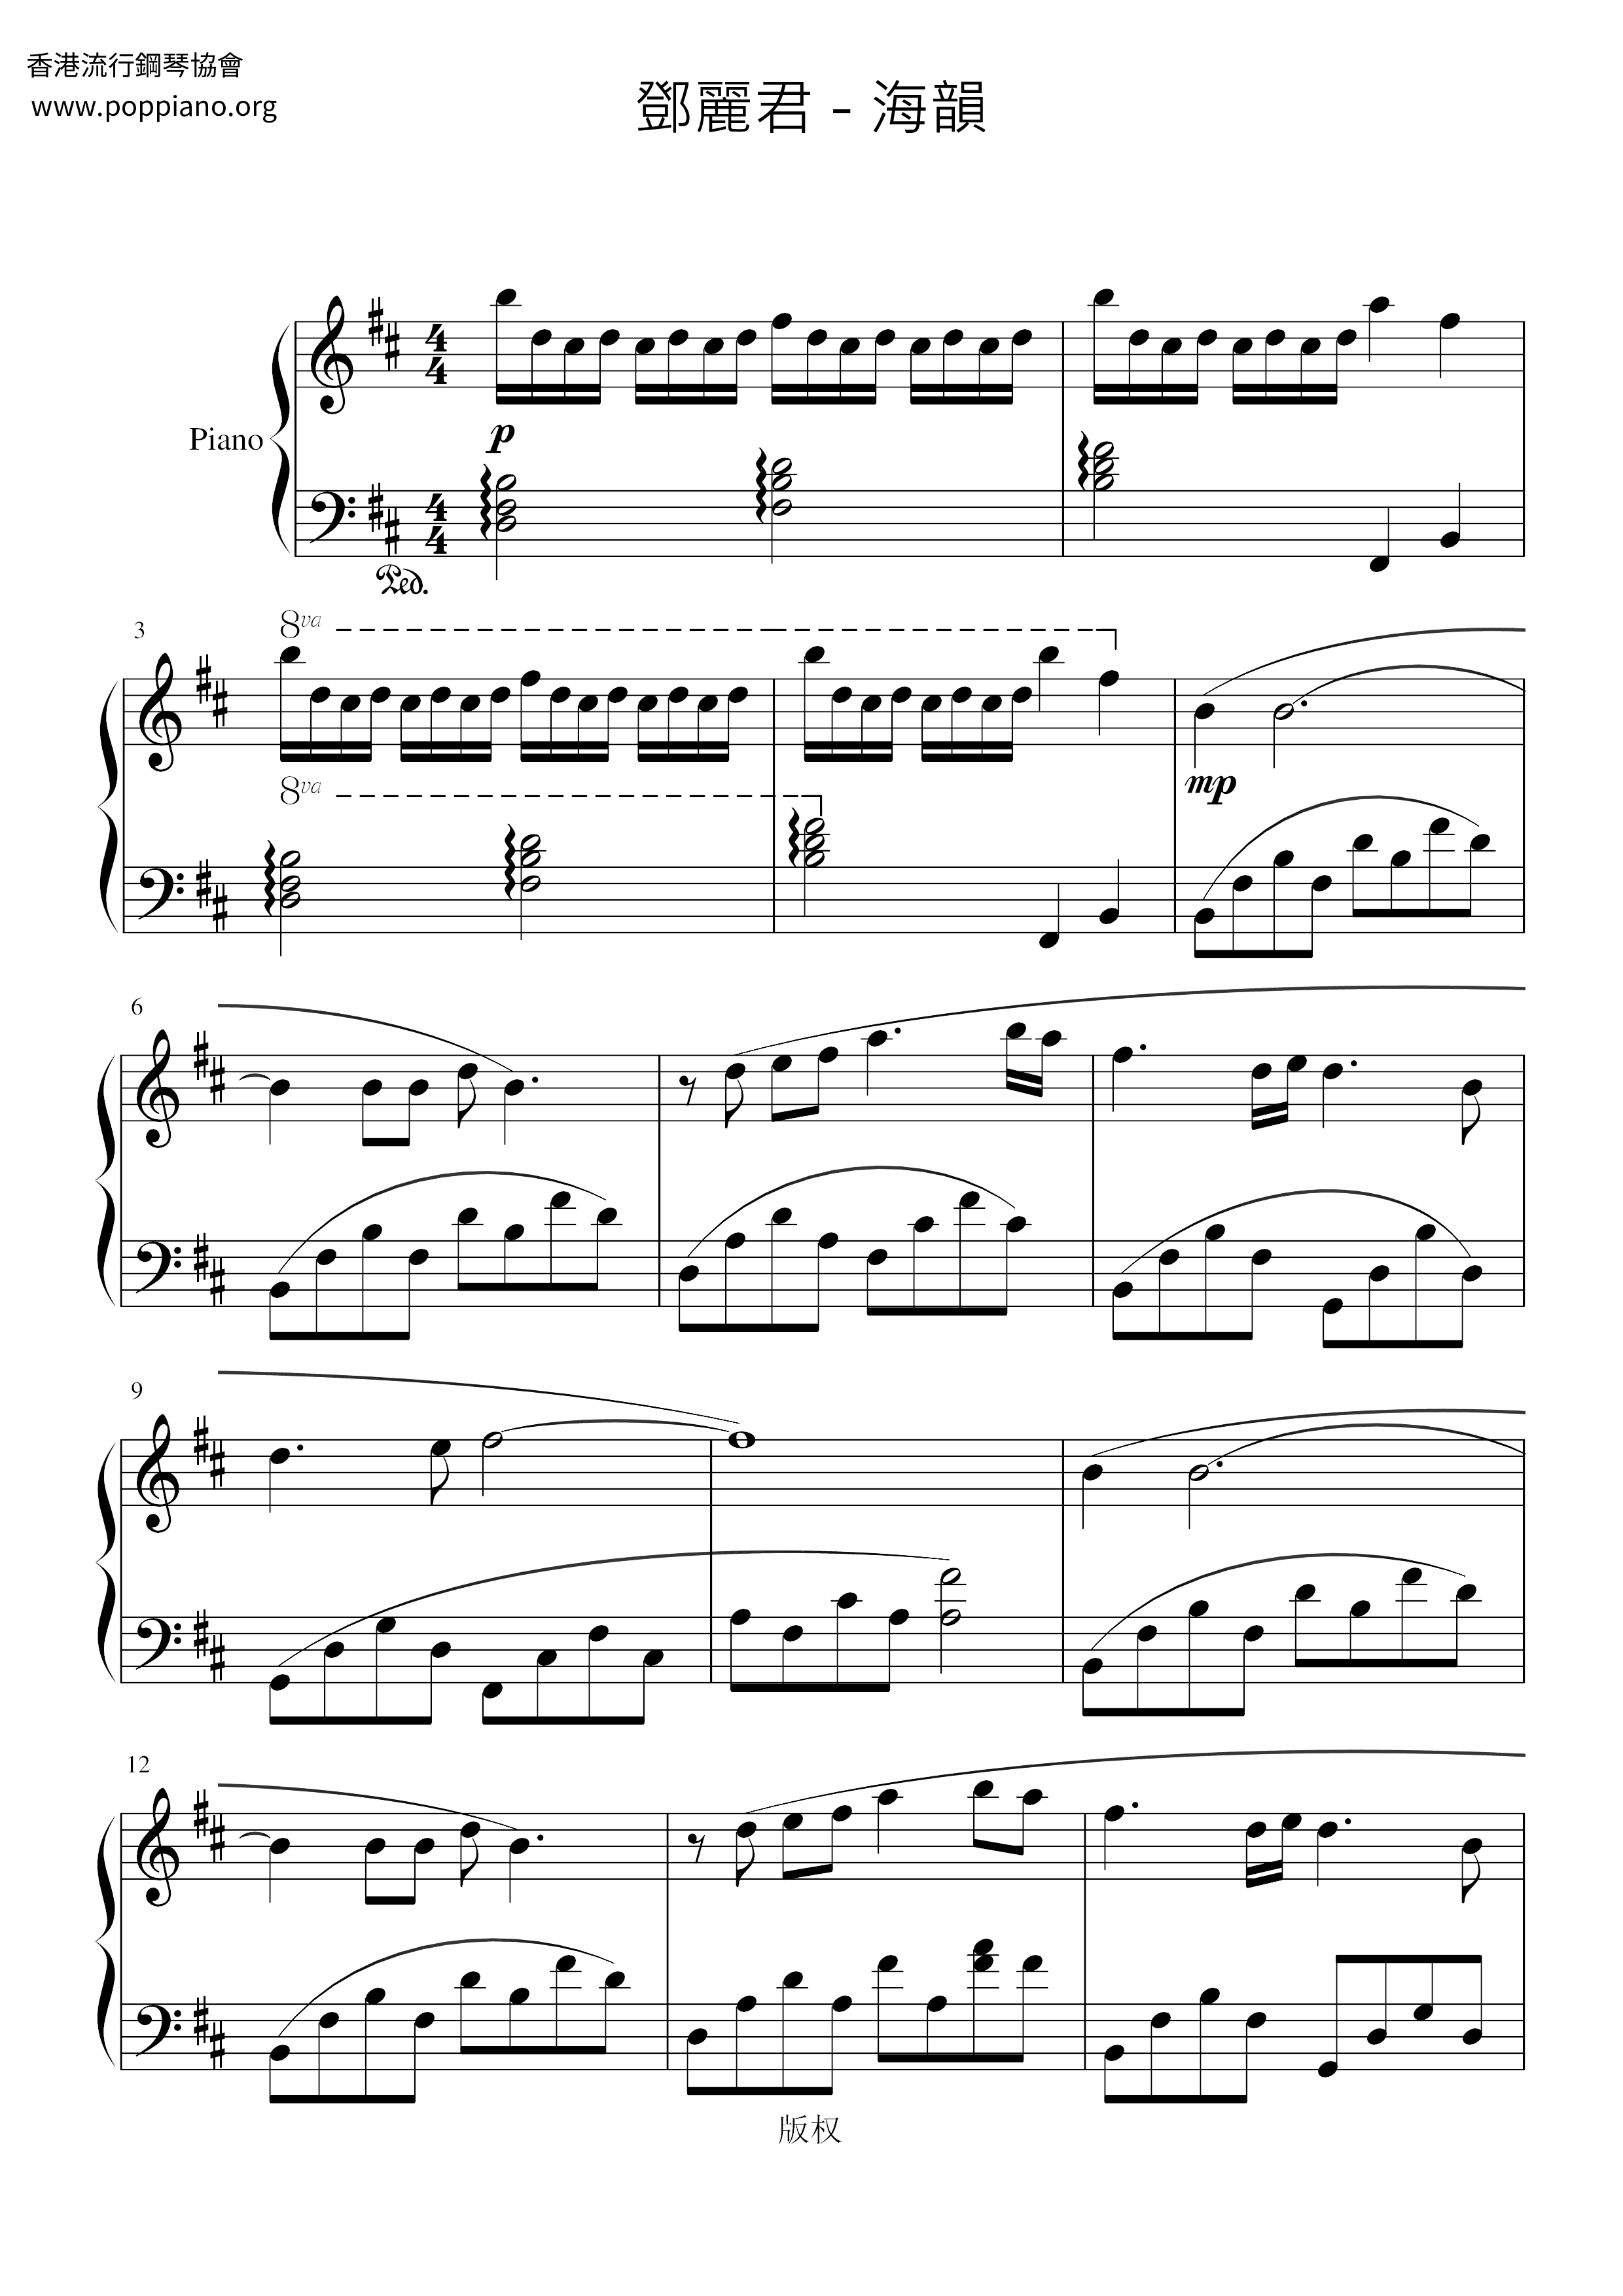 Haiyun Score